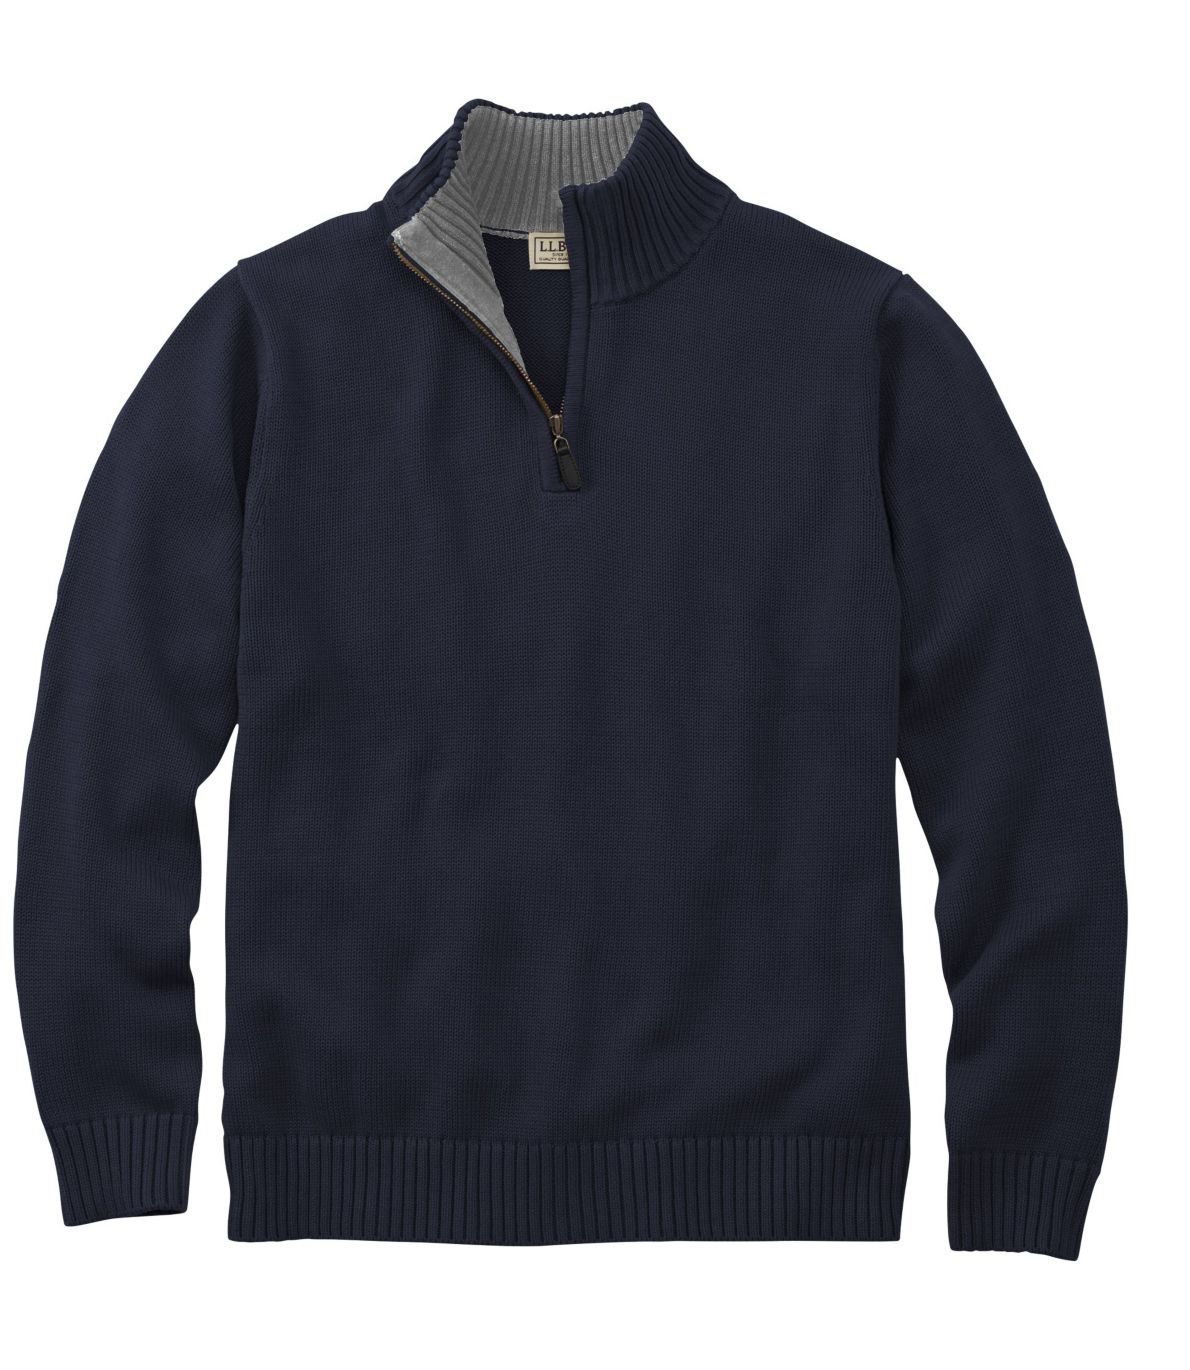 Men's Double L Cotton Sweater, Quarter-Zip at L.L. Bean